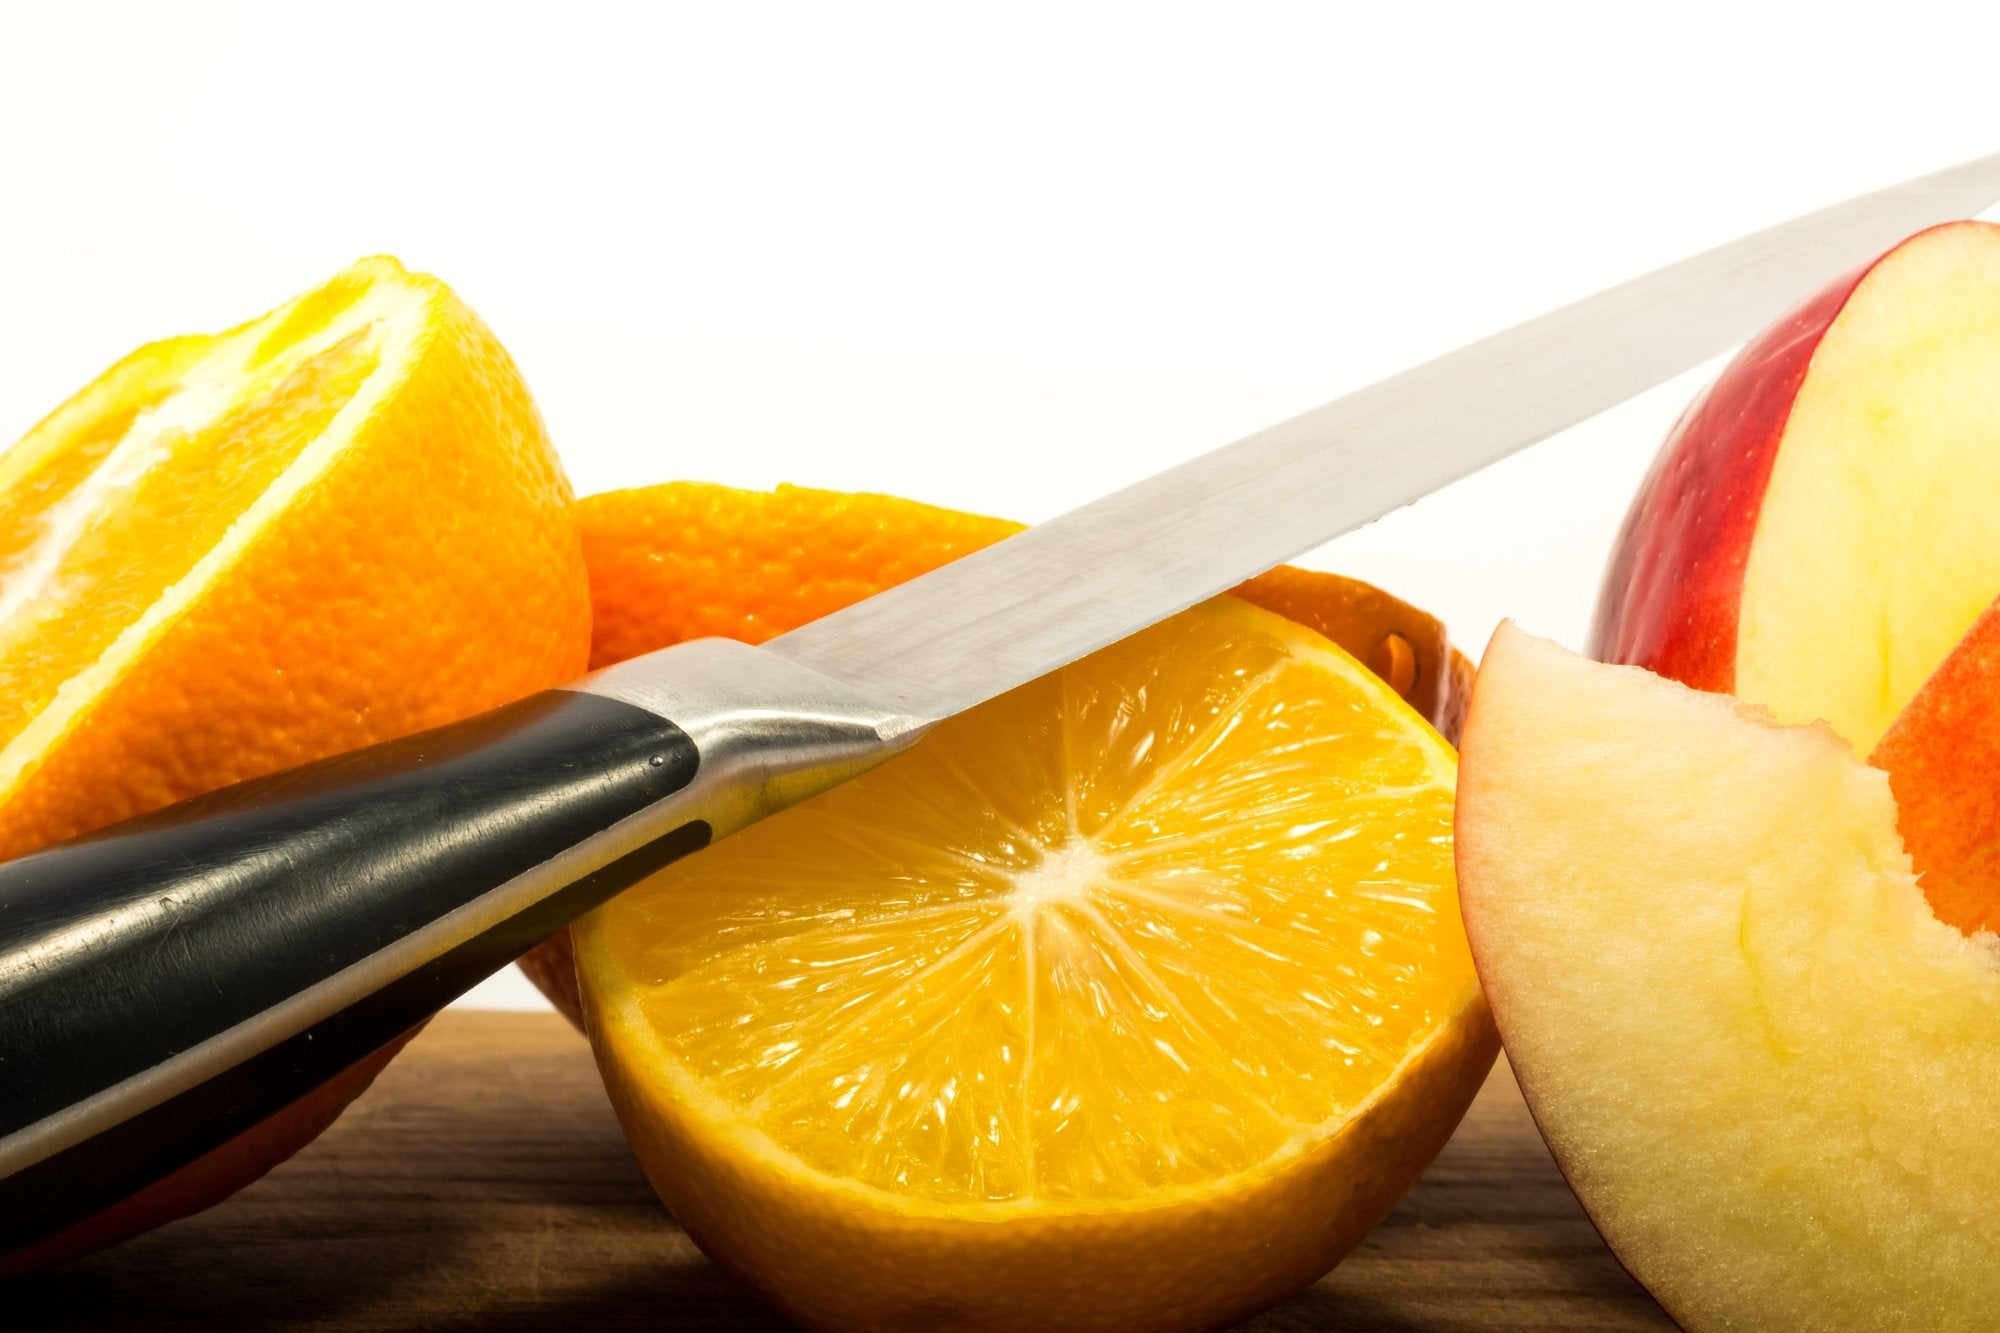 Quels couteaux avez-vous besoin pour couper vos fruits préférés